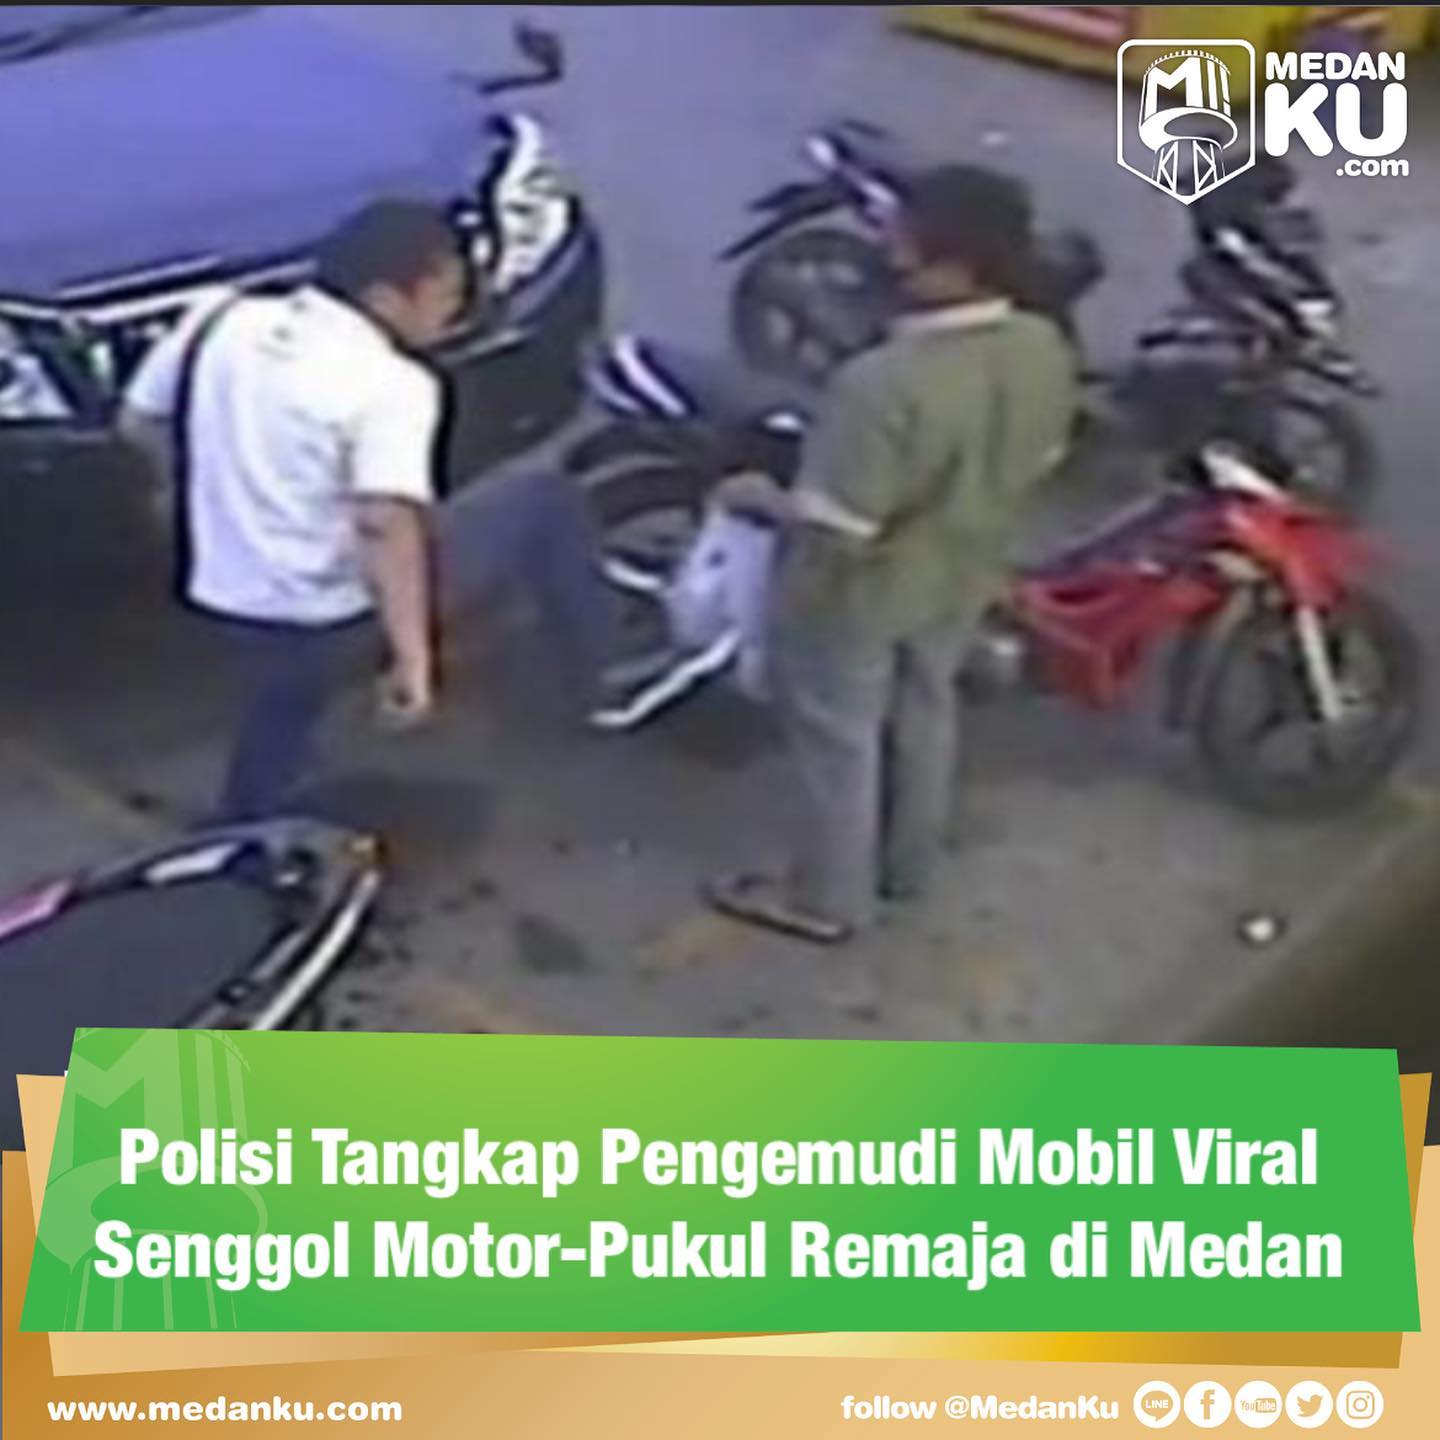 Polisi Tangkap Pengemudi Mobil Viral Senggol Motor-Pukul Remaja di Medan

Pria berinisial HSM diduga melakukan pemukulan terhadap remaja di Medan, Sumatera Utara, ditetapkan sebagai tersangka. Polisi pun telah menangkap pria tersebut.
"Iya sudah diamankan," kata Kabid Humas Polda Sumut Kombes Hadi Wahyudi dimintai konfirmasi, Jumat (24/12/2021).

Hadi belum menjelaskan secara detail kronologi penangkapan pria itu. Hadi mengaku saat ini petugas sedang memeriksa pria itu.

"Sedang dilakukan pemeriksaan penyidik Polrestabes Medan," sebut Hadi.

Korban membuat laporan ke Polrestabes Medan. Polisi melakukan pemeriksaan terhadap empat orang saksi atas peristiwa itu. Polisi pun menetapkan pengemudi mobil tersebut menjadi tersangka.

Sumber: detik